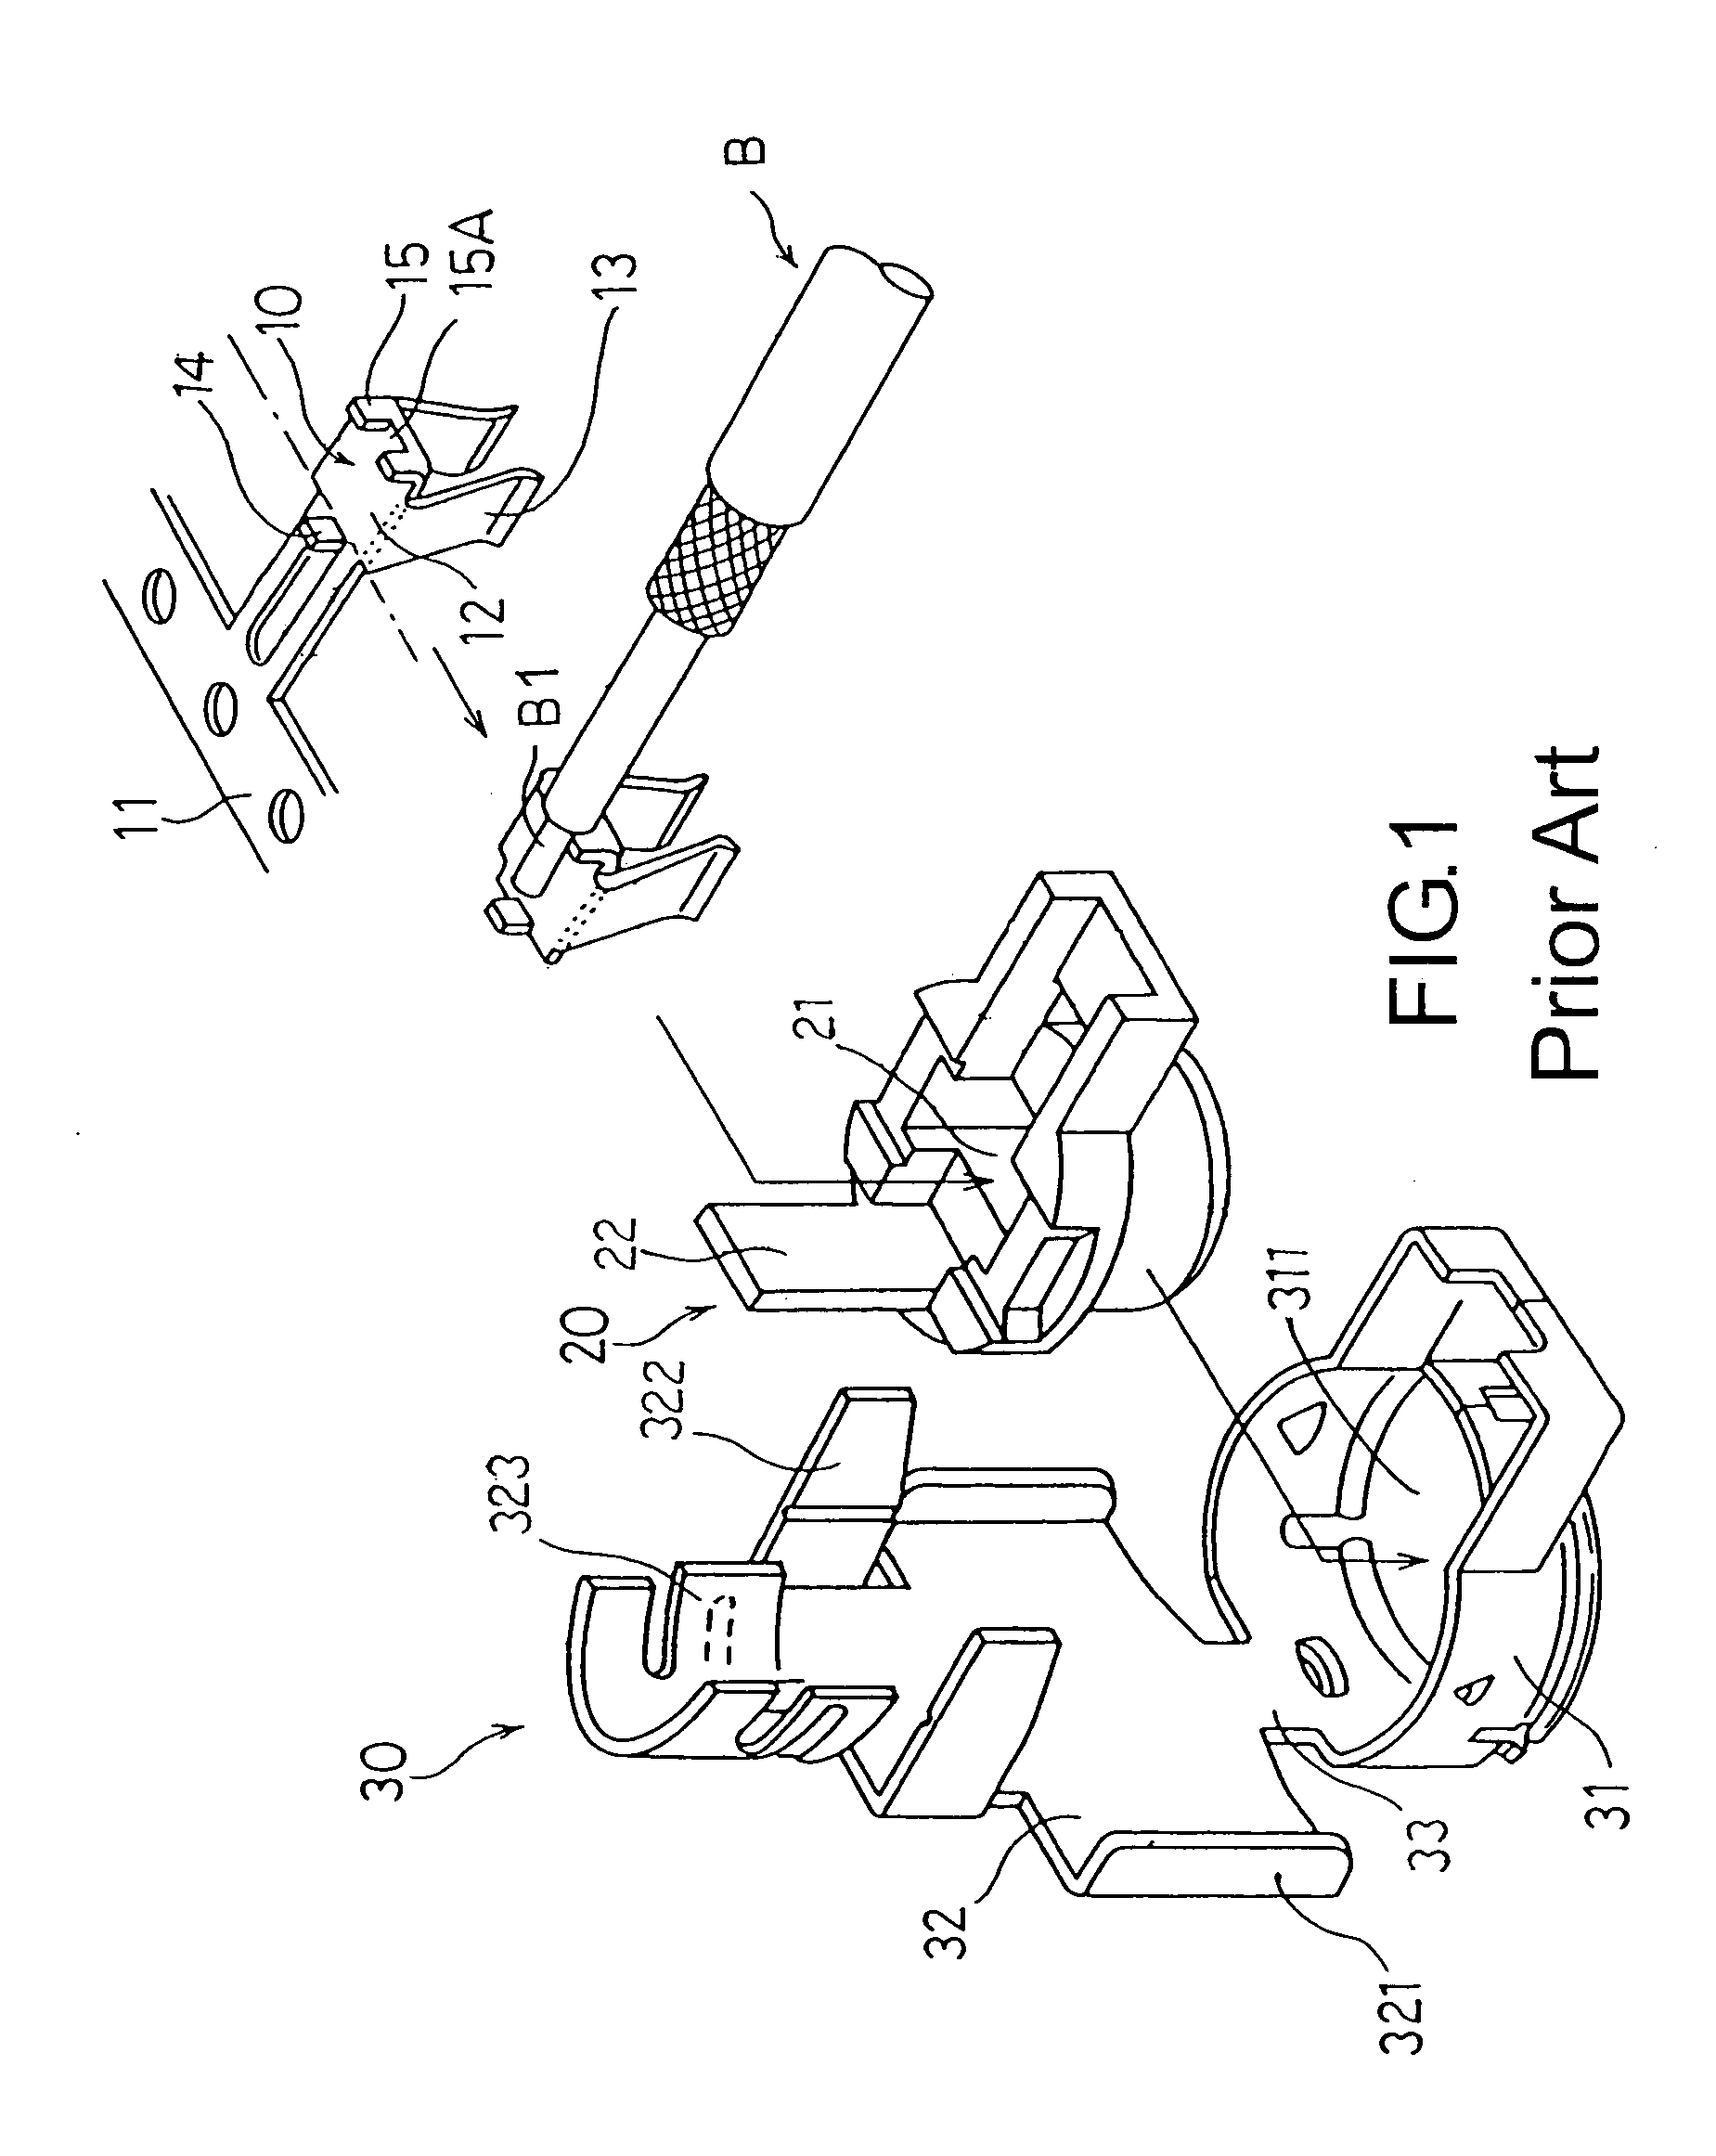 Micro coaxial connector